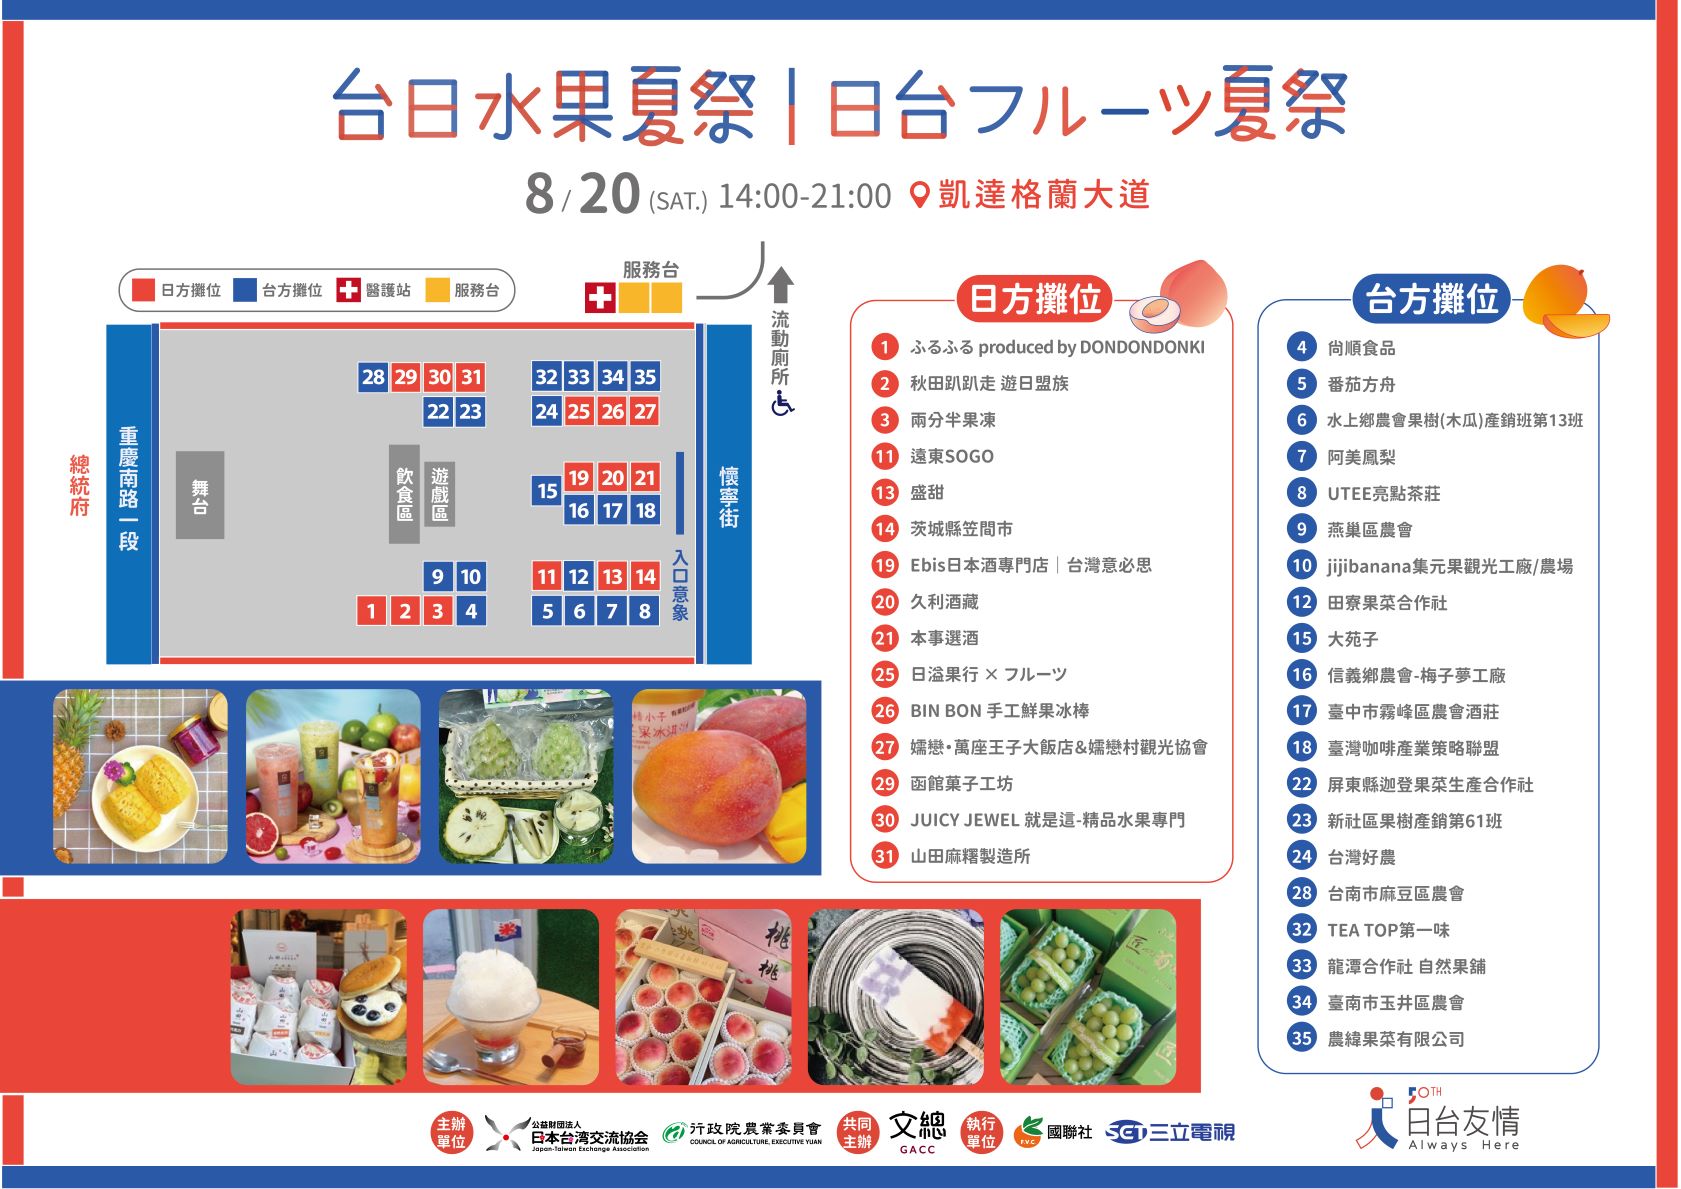 台北假日市集「台日水果夏祭」攤位一覽表